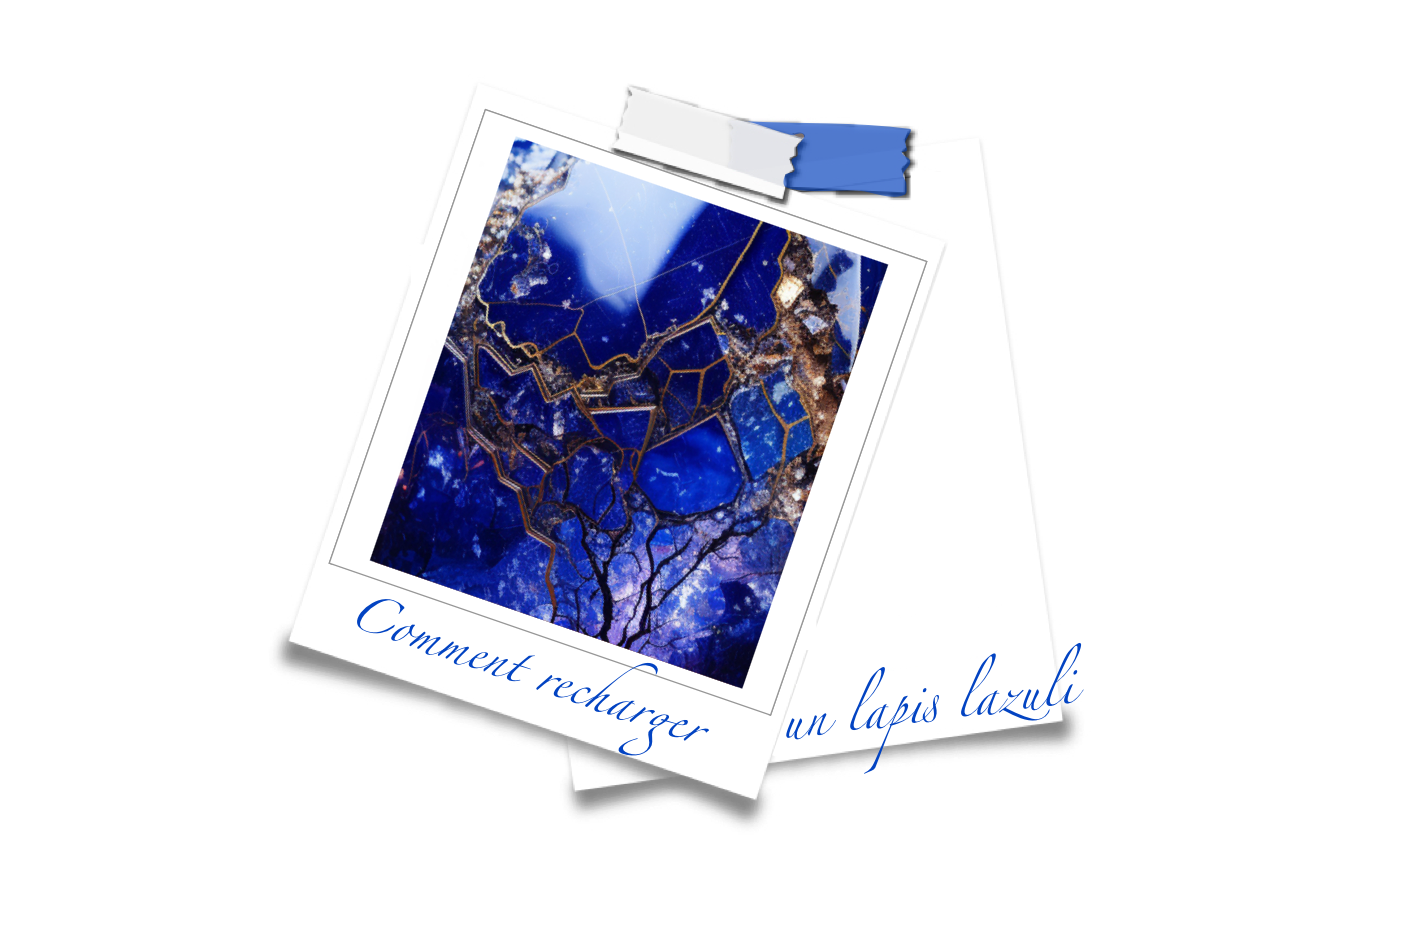 Comment recharger un lapis lazuli ?